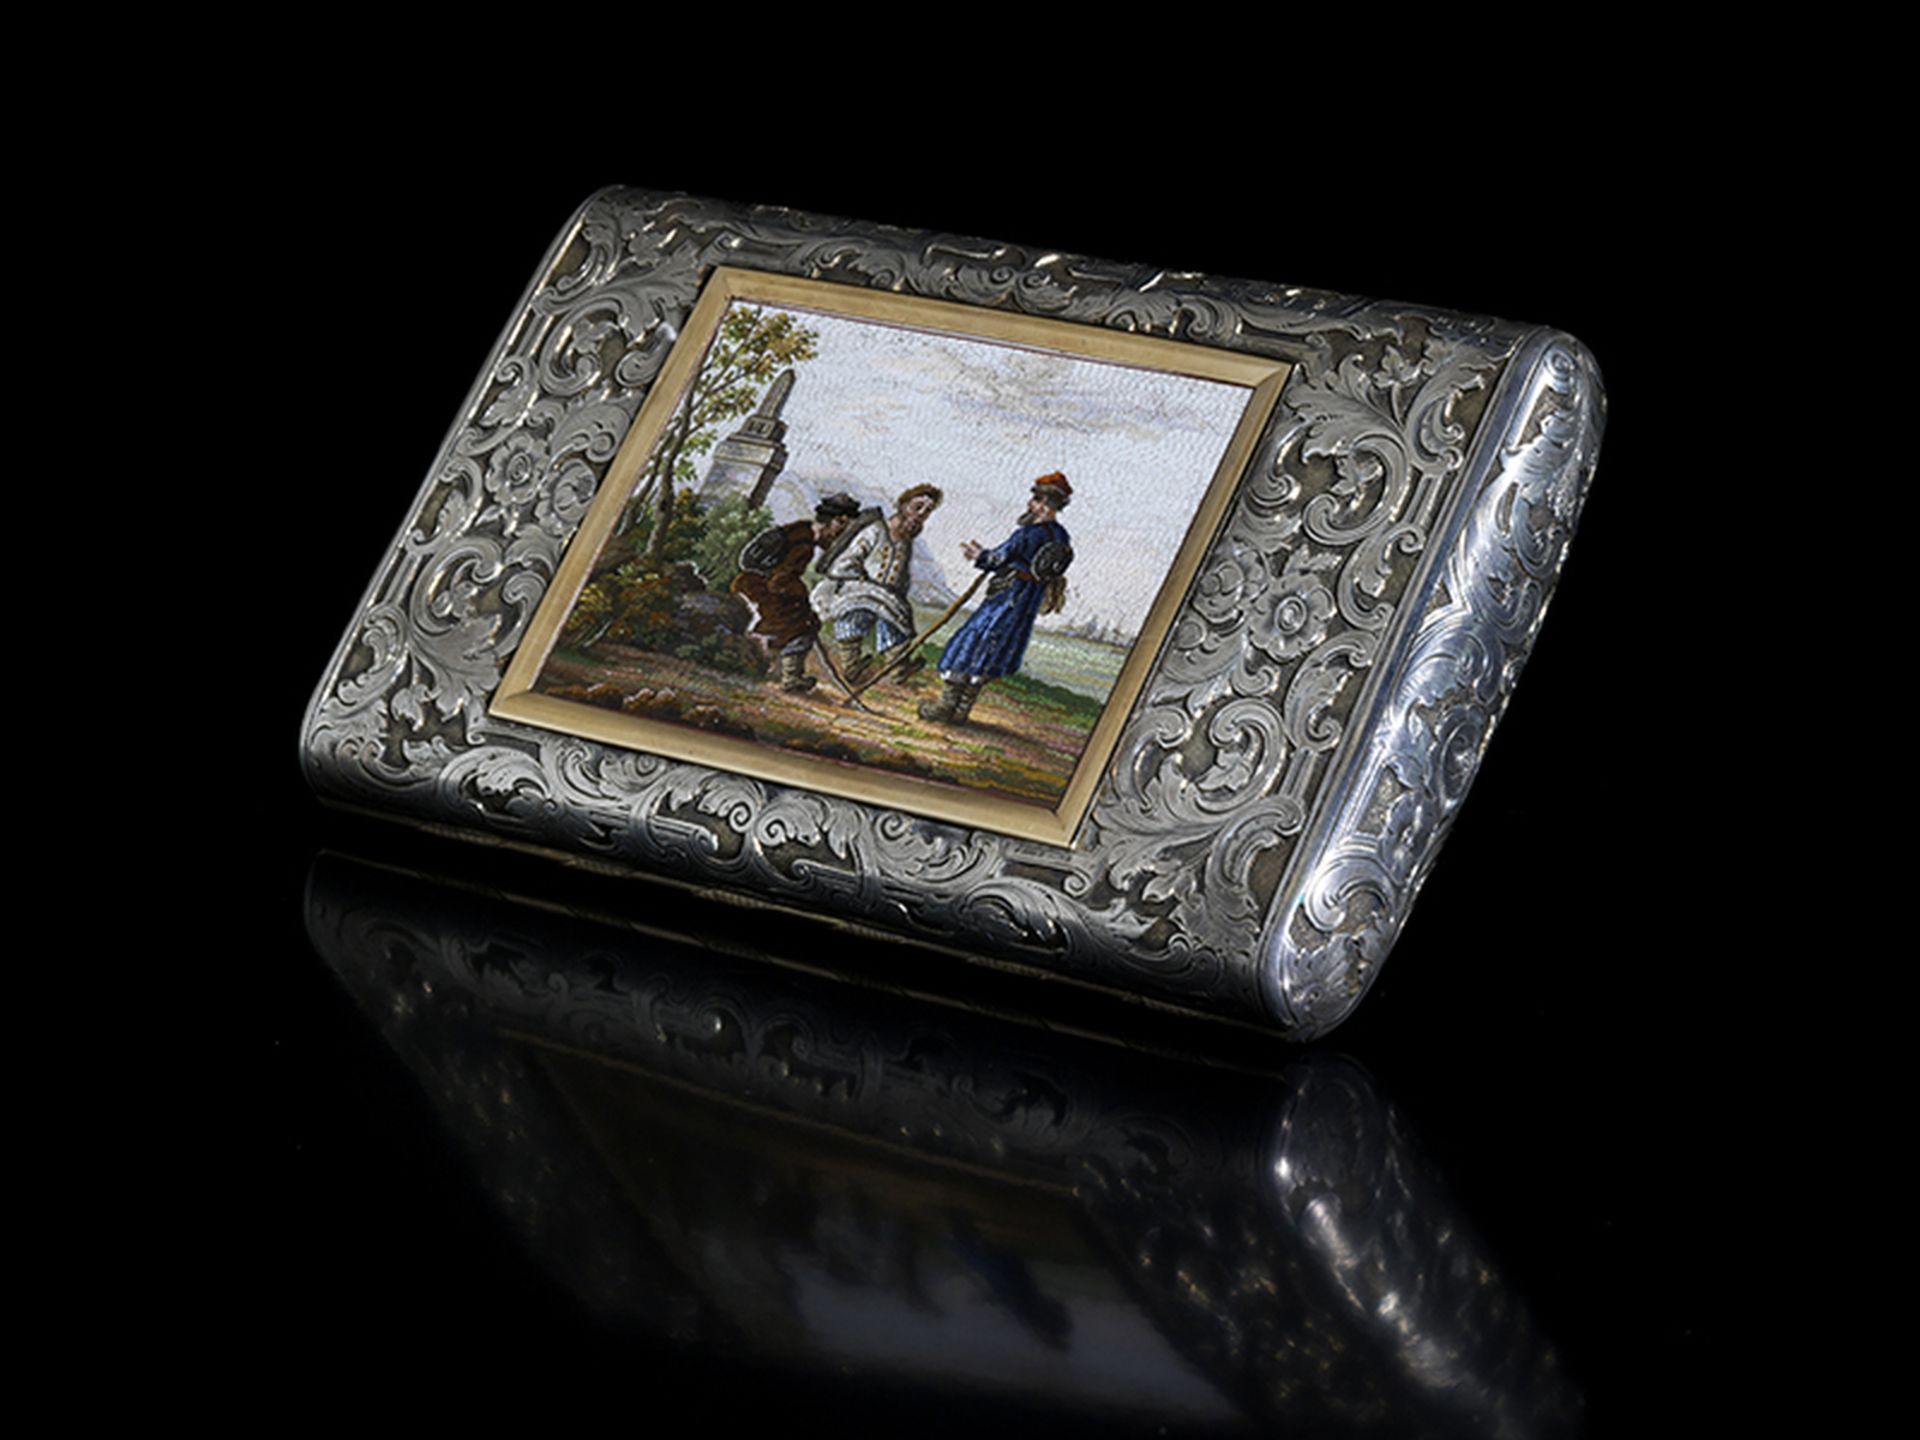 Sankt Petersburger Zigarrenetui 13 x 8 cm. Gewicht: 318 g. Sankt Petersburger Beschau, - Bild 5 aus 5